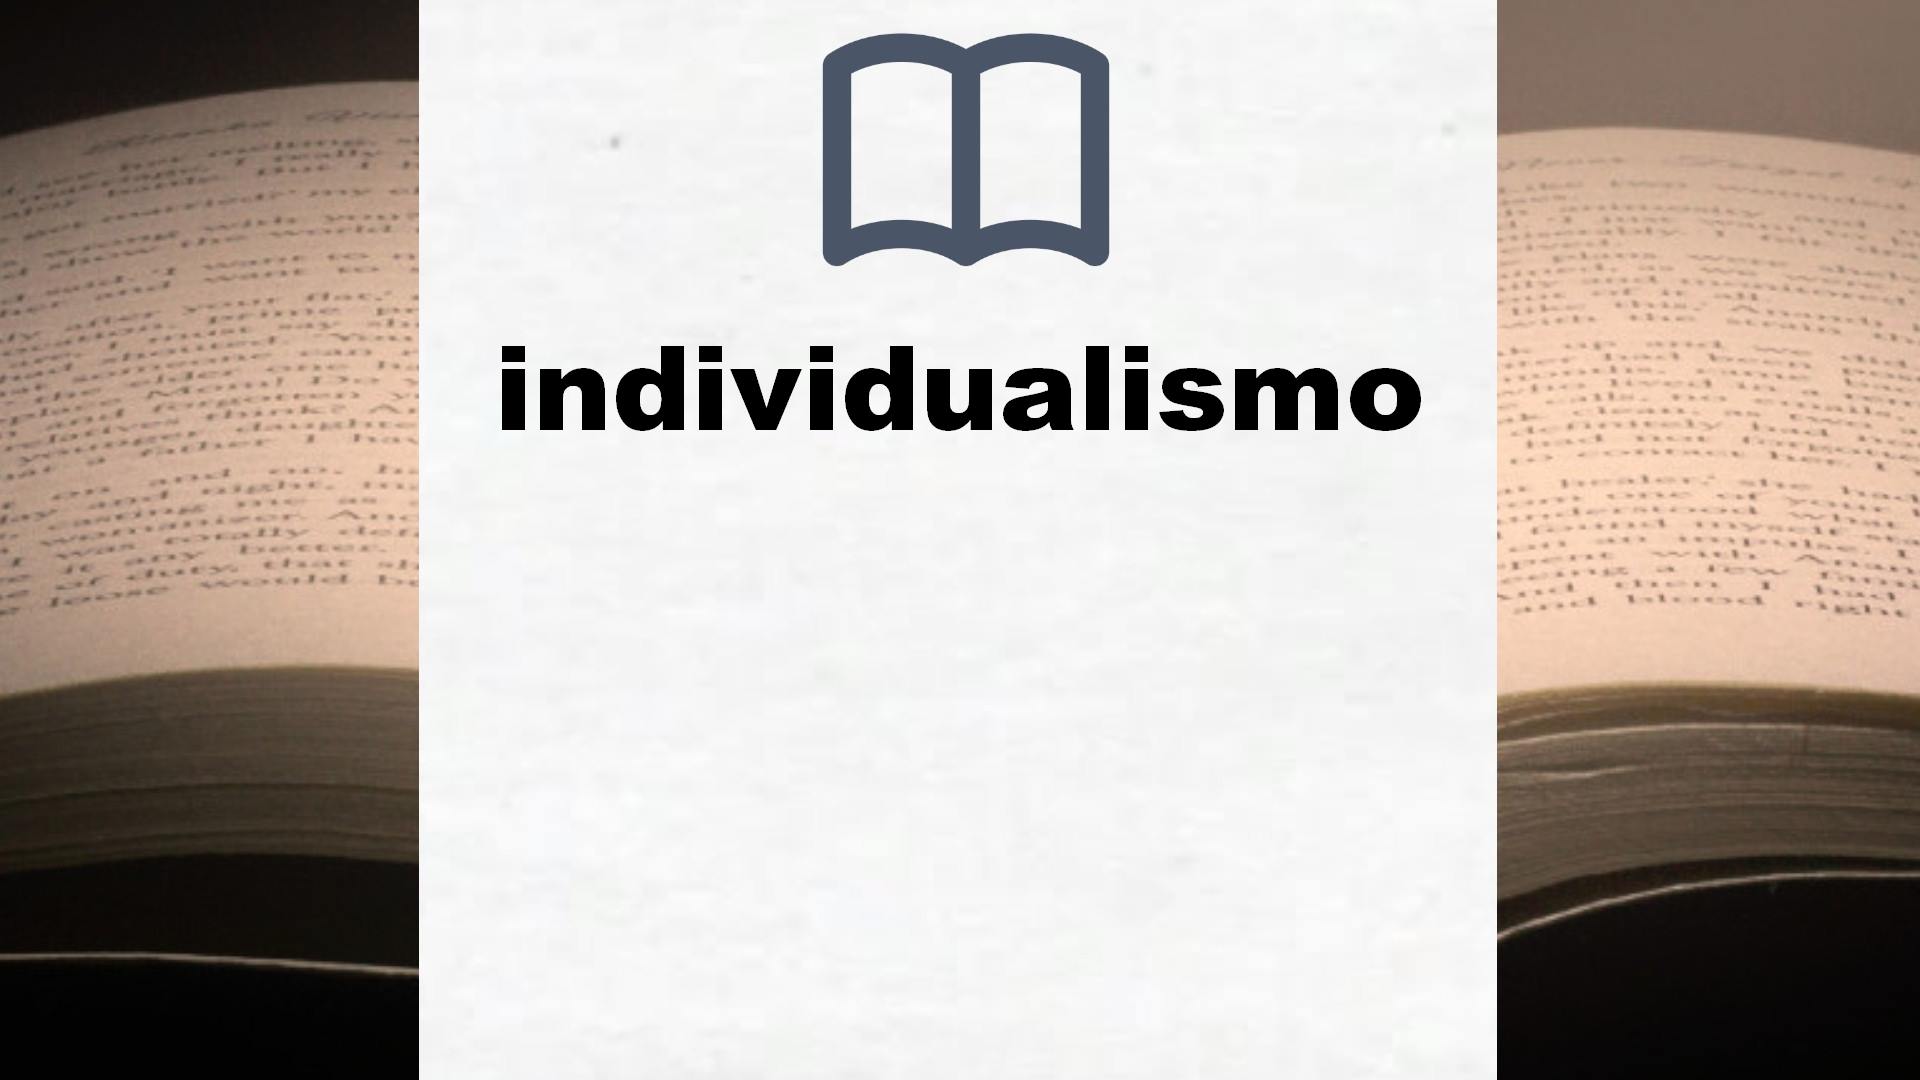 Libros sobre individualismo